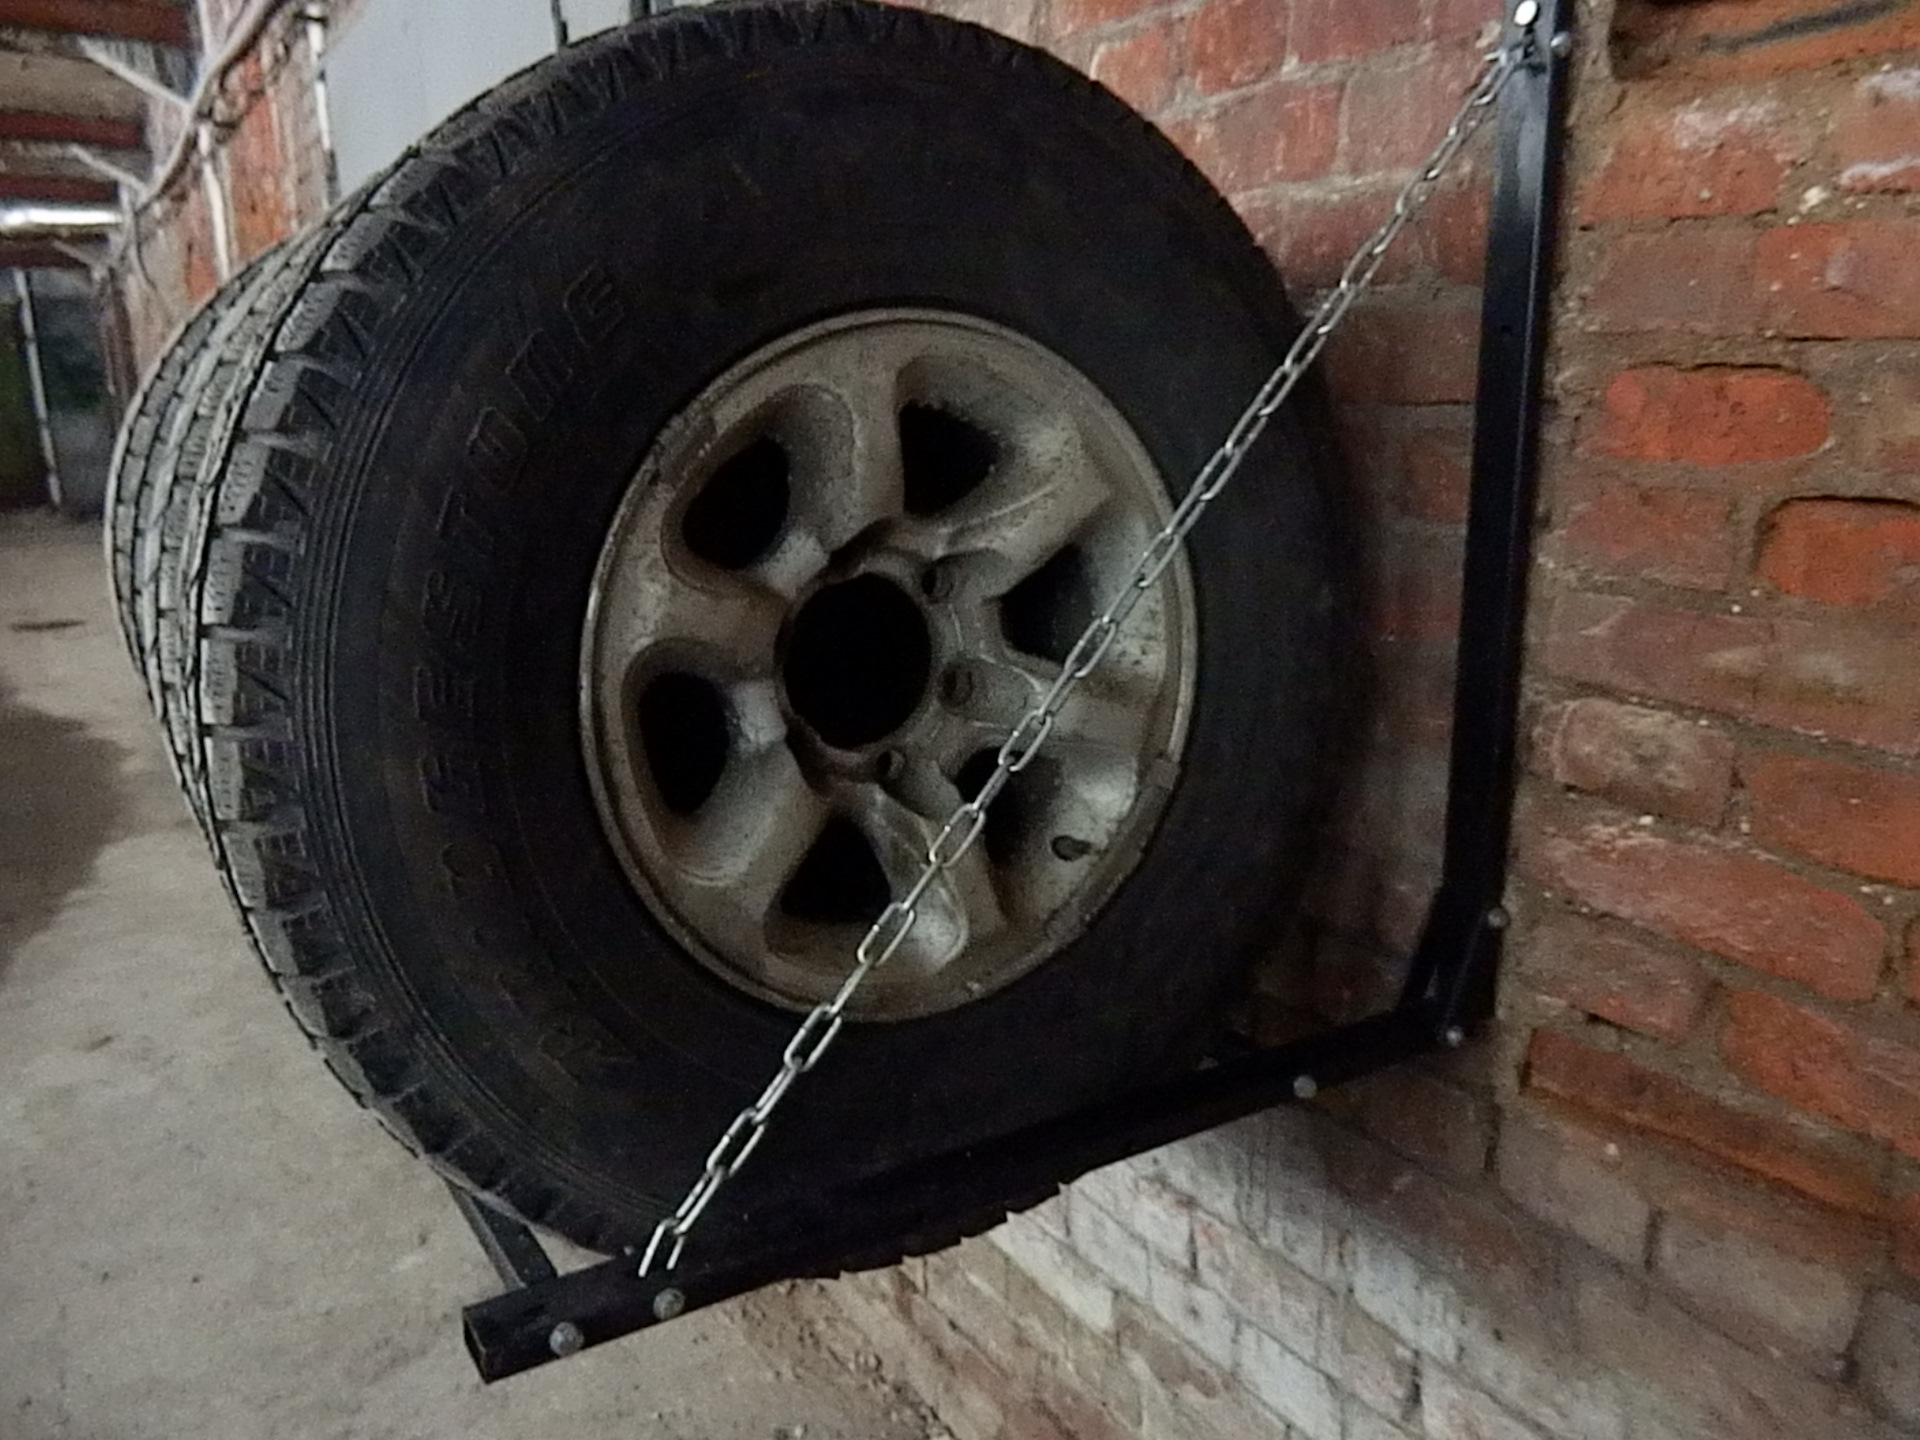 Кронштейн для колес на стену. Подвесы для колес в гараже. Кронштейн для колес в гараж. Подвес для хранения колес. Подвес для колес на стену.